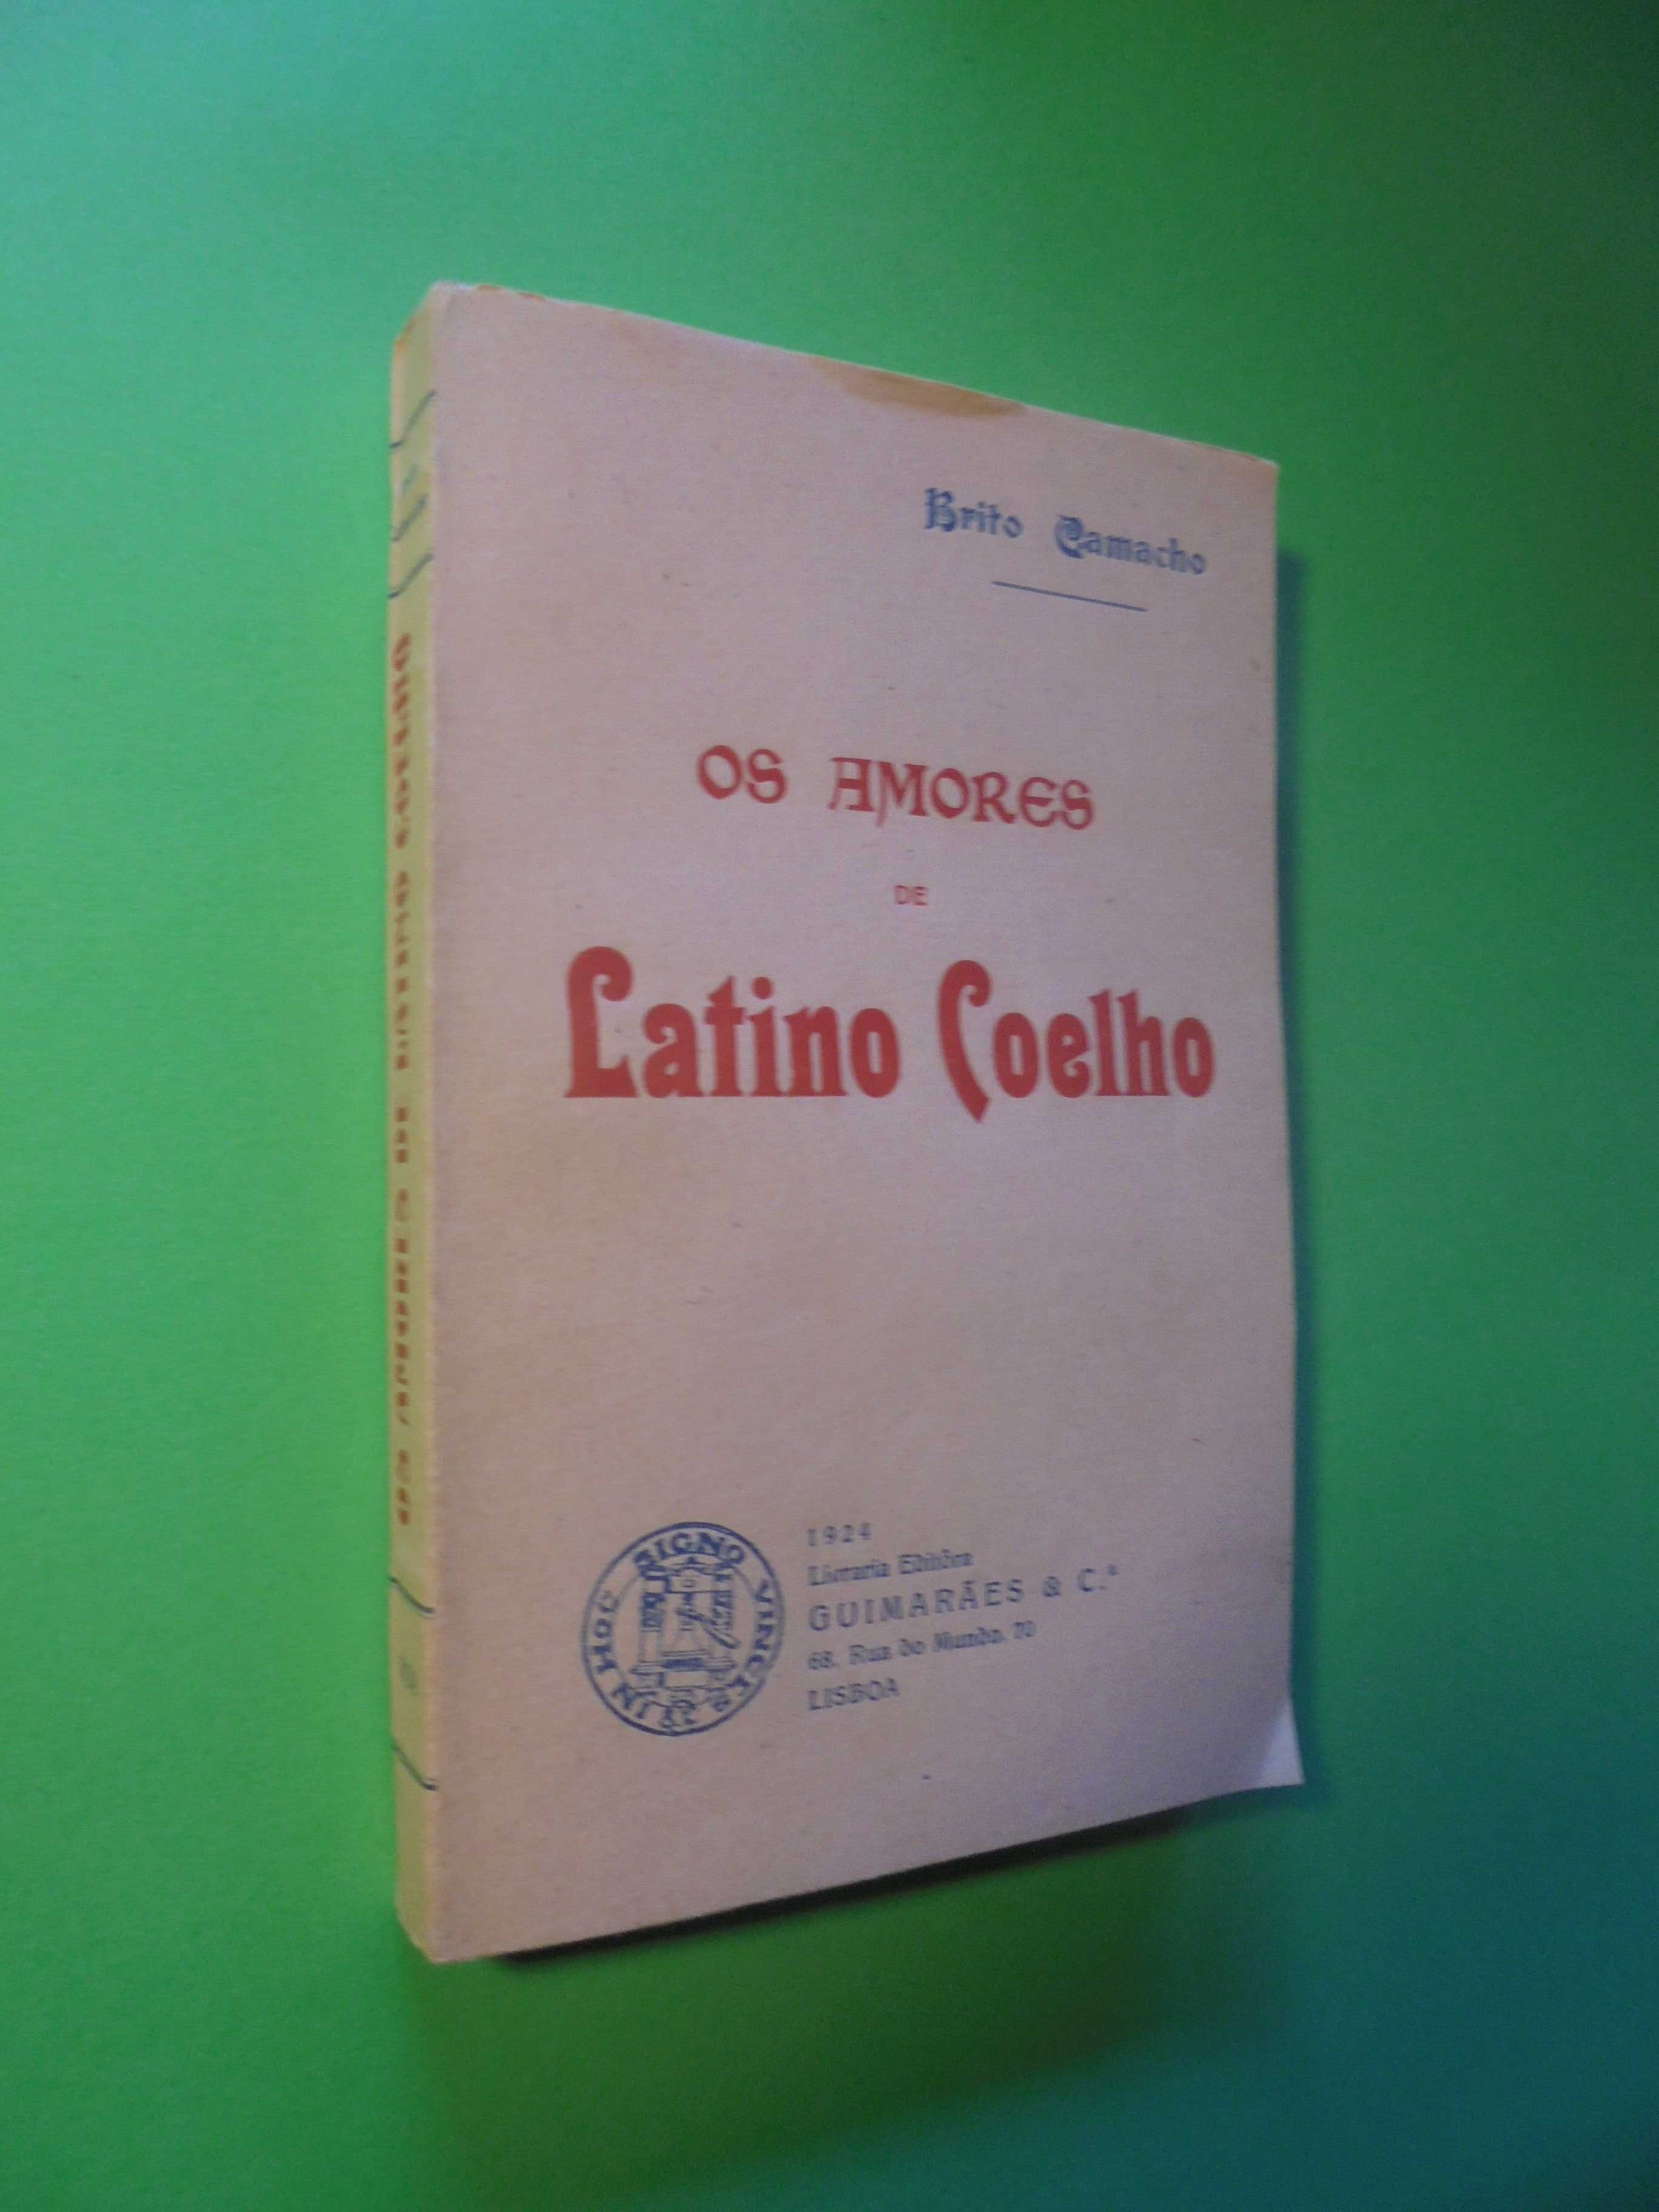 Camacho (Brito);Os Amores de Latino Coelho